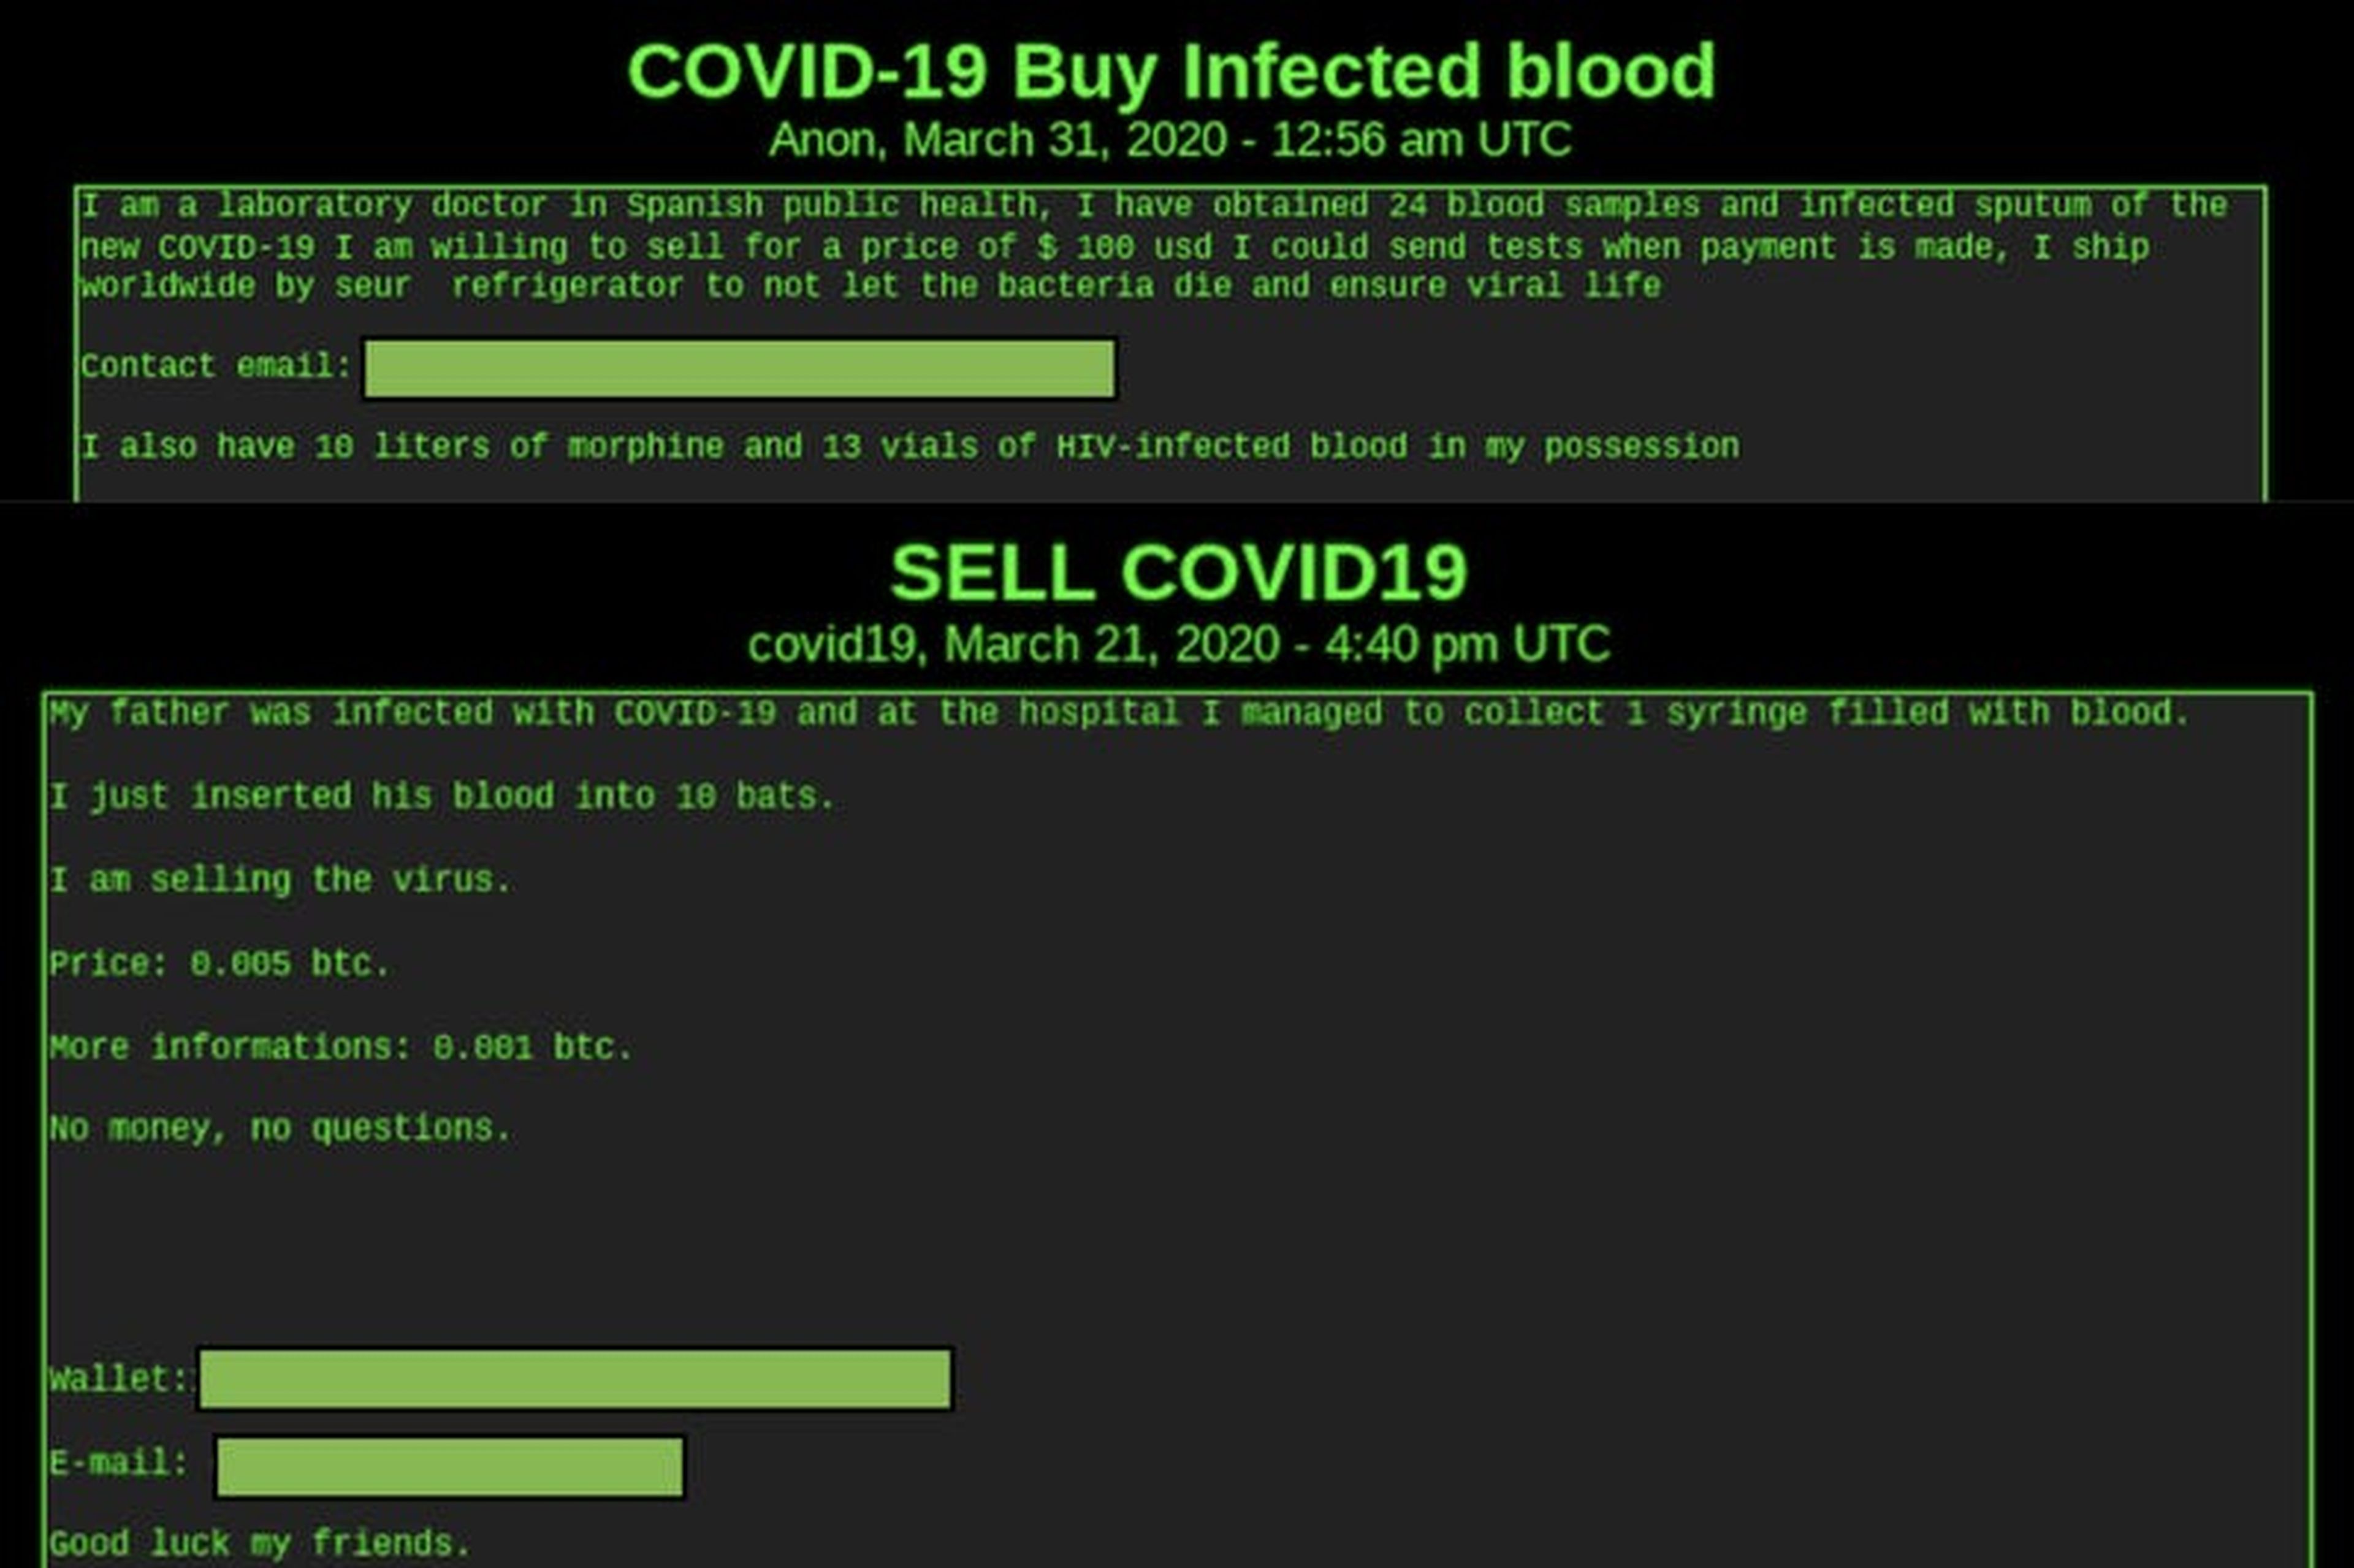 Sangre infectada con COVID-19 a la venta según informaciones de DarkOwl.